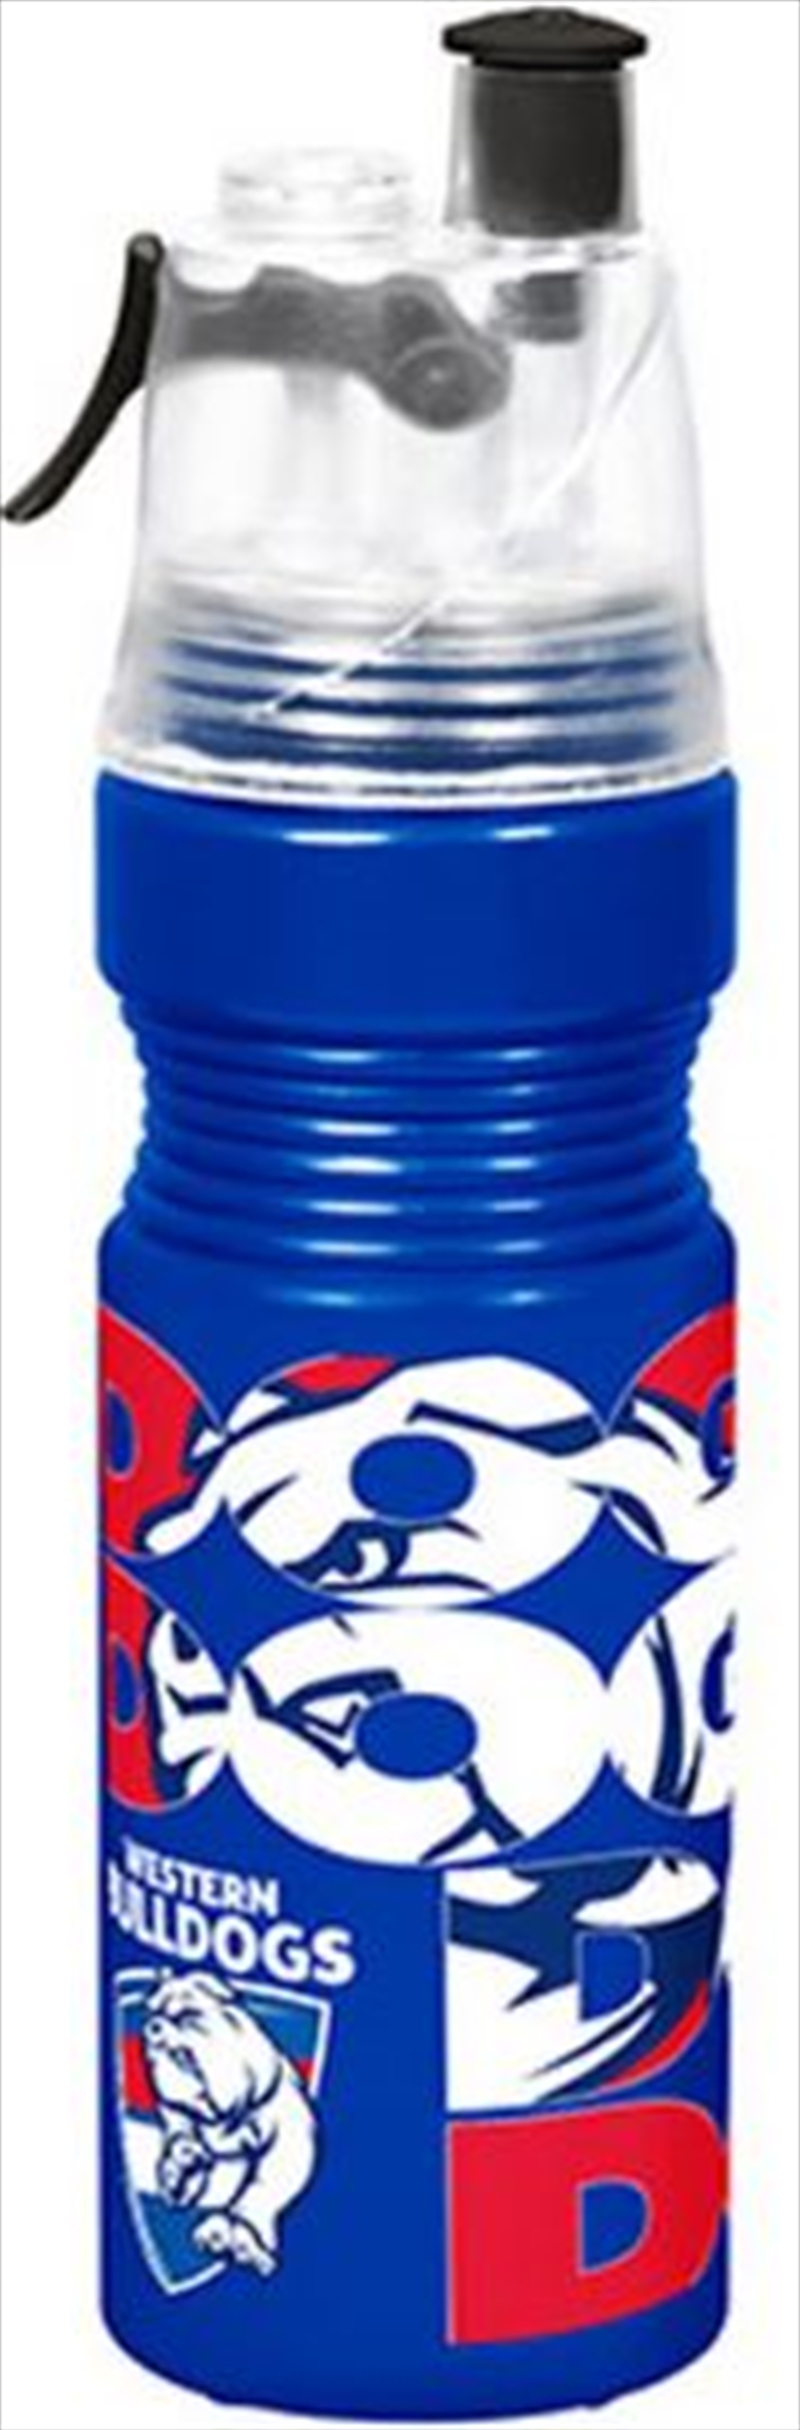 AFL Misting Drink Bottle Western Bulldogs/Product Detail/Drink Bottles